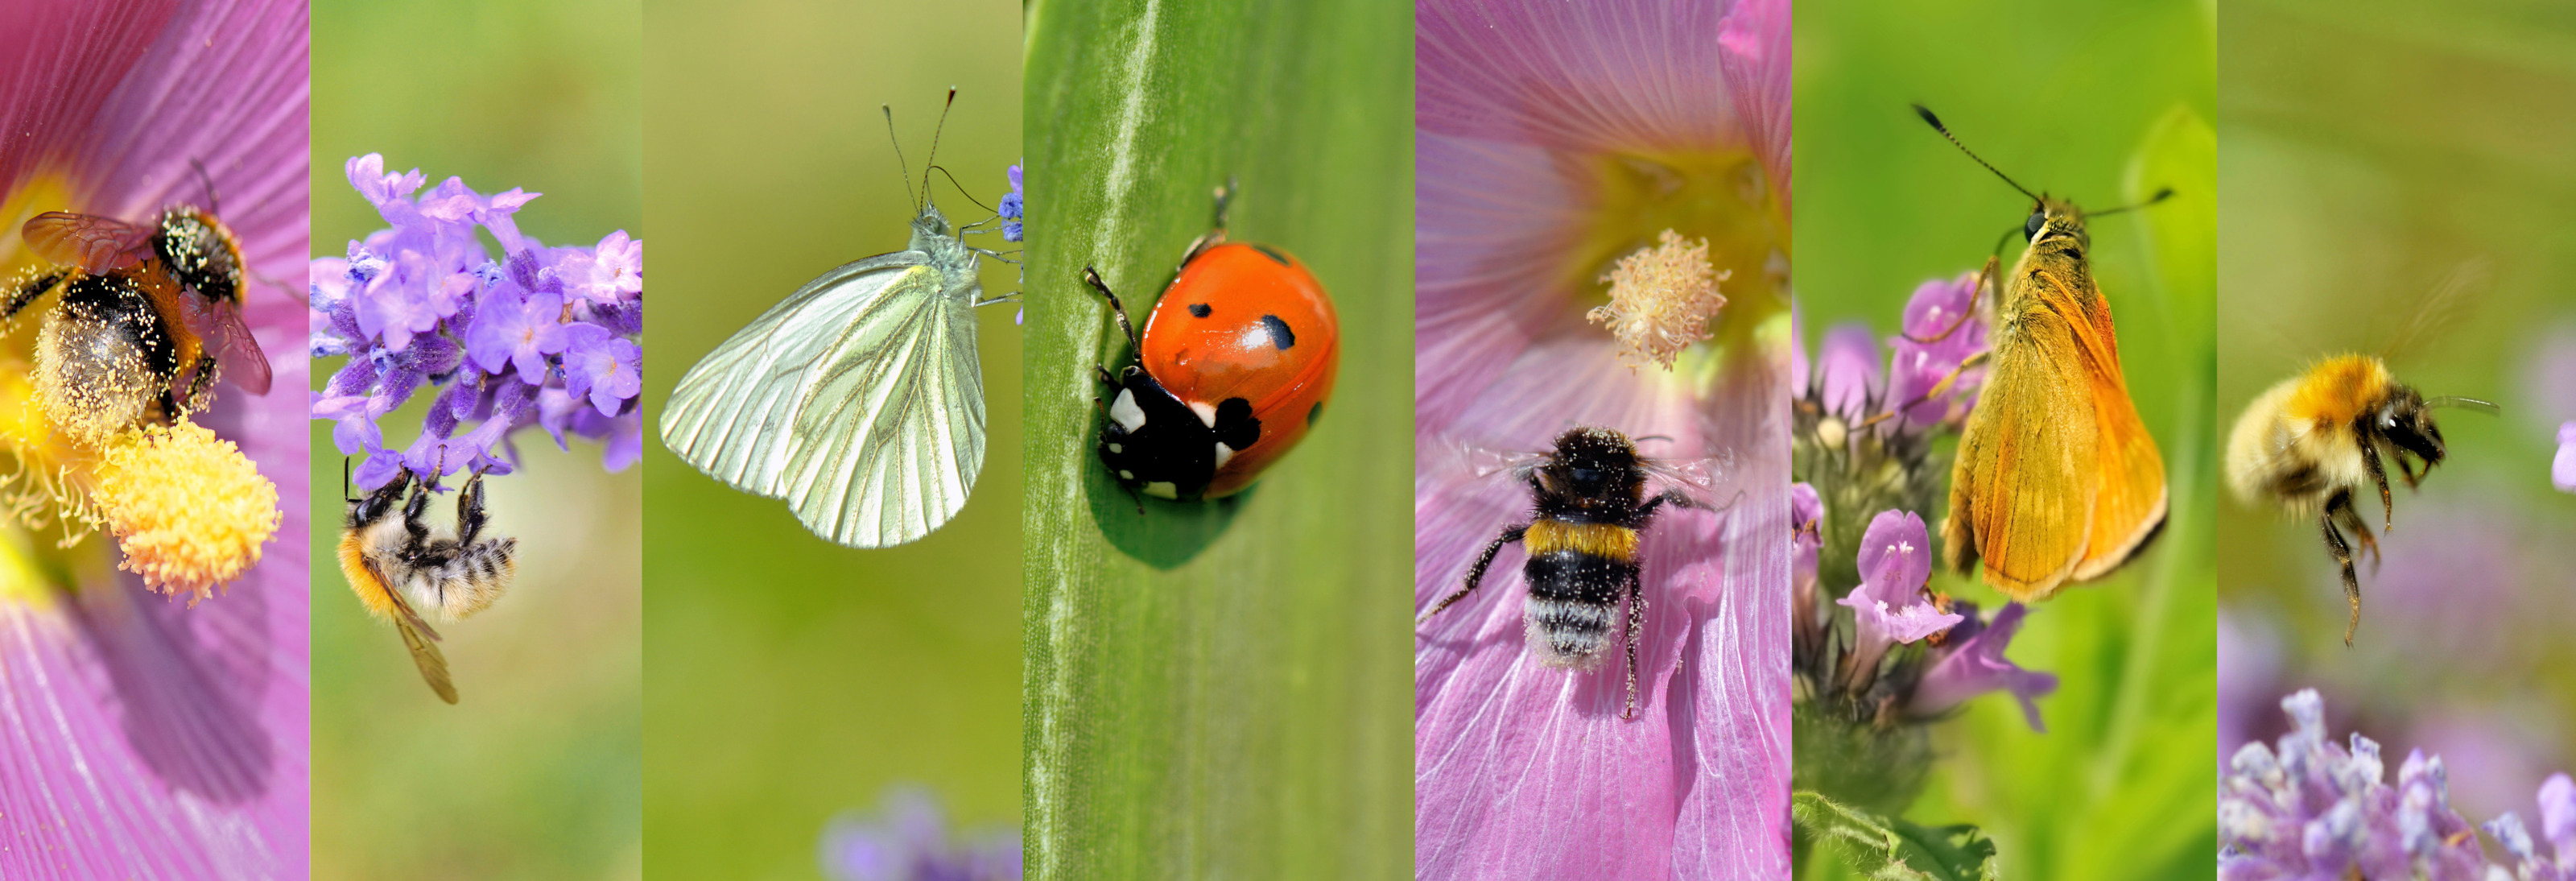 Collage aus mehreren nebeneinander gereihten Bildern mit Detailansichten von Insekten auf Blumen: Bienen, Hummeln, Schmetterlinge, Marienkäfer und Falter